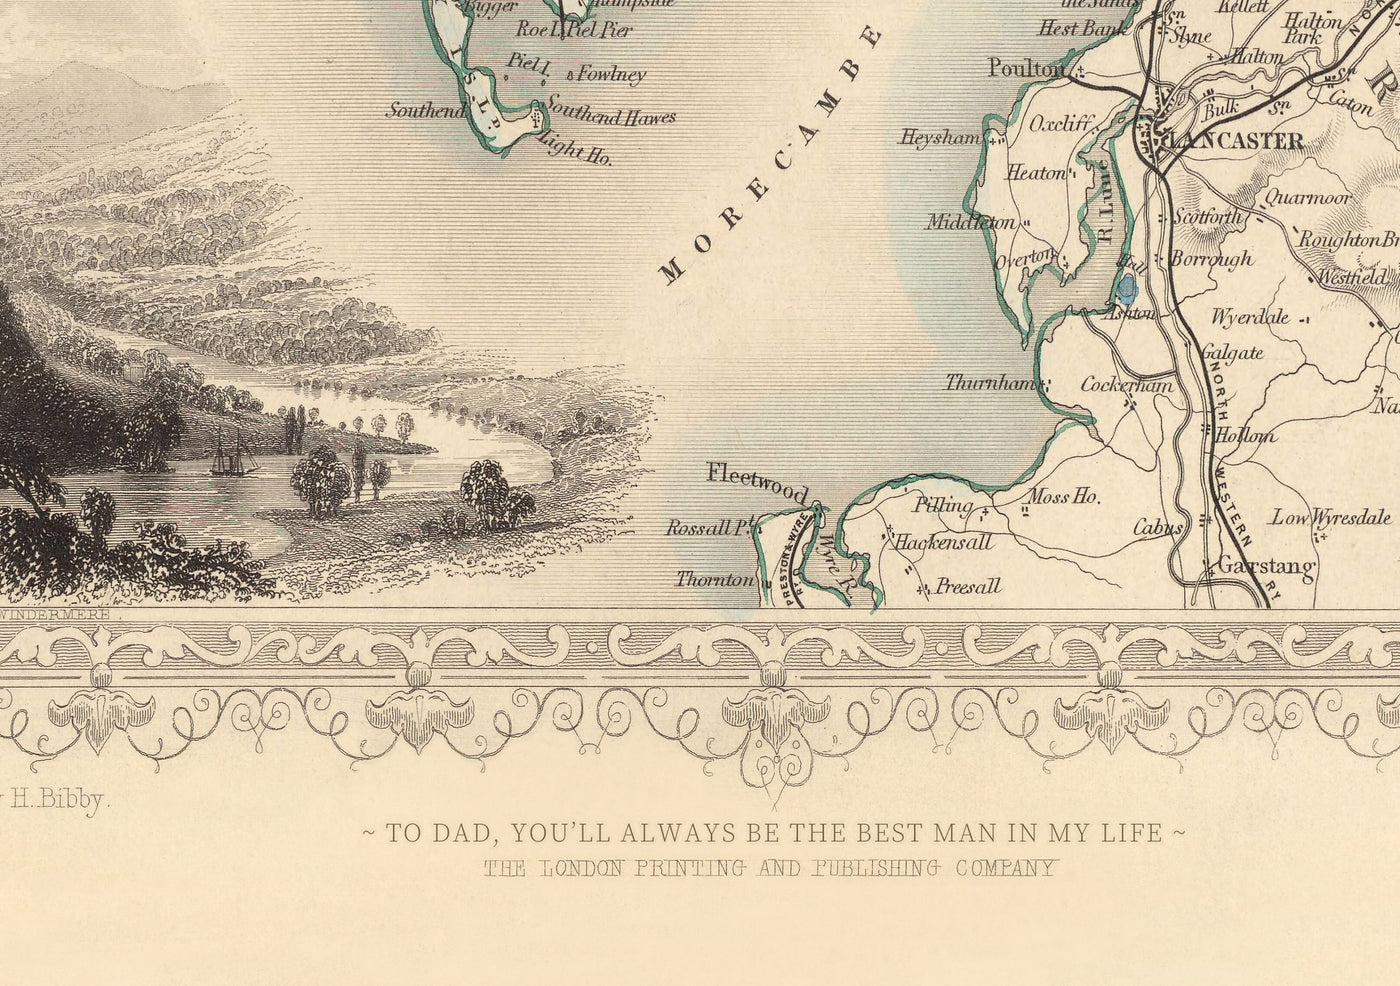 Alte Karte von Neuseeland im Jahr 1879 von AK Johnston - Auckland, Christchurch, Wellington, Queenstown, Dunedin